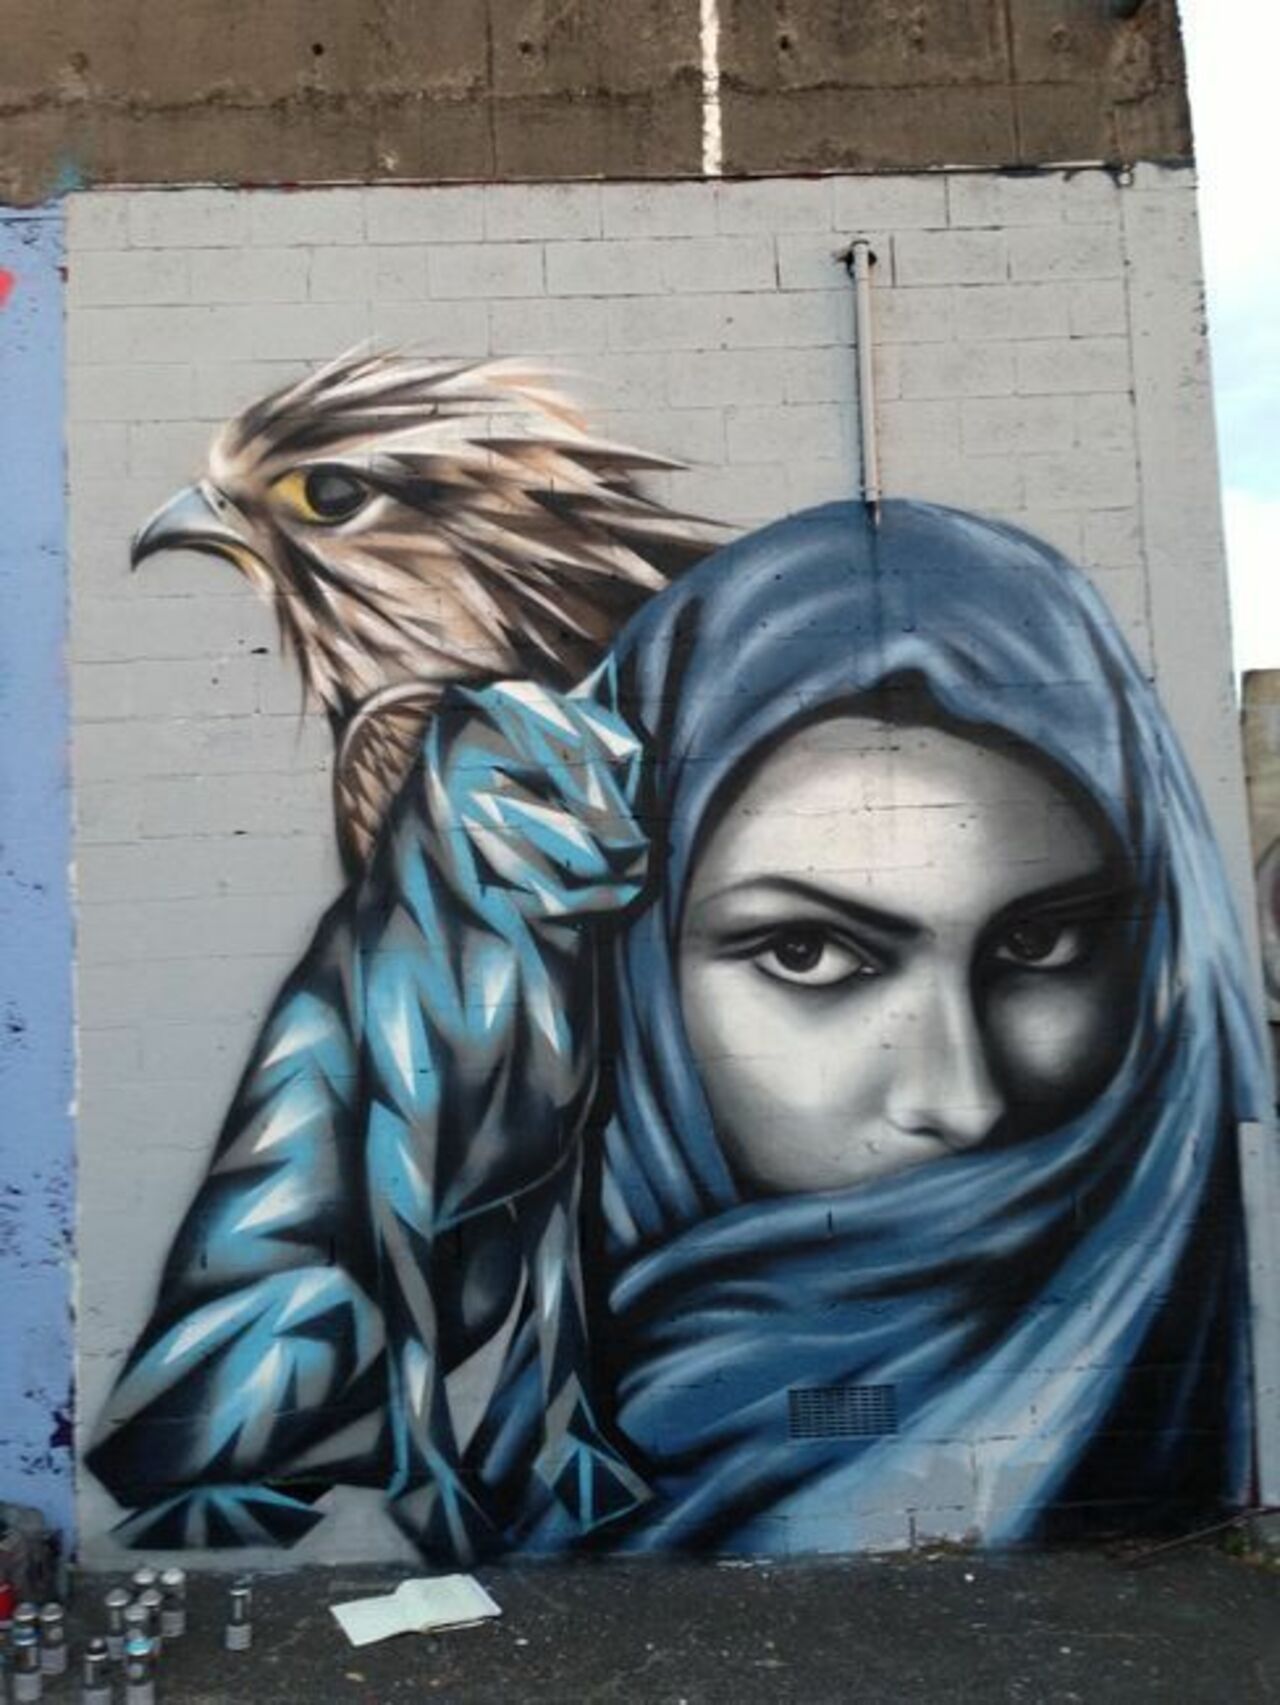 By Enforce One - Auckland #streetart #mural #graffiti #art https://t.co/HC9pVAmhdH